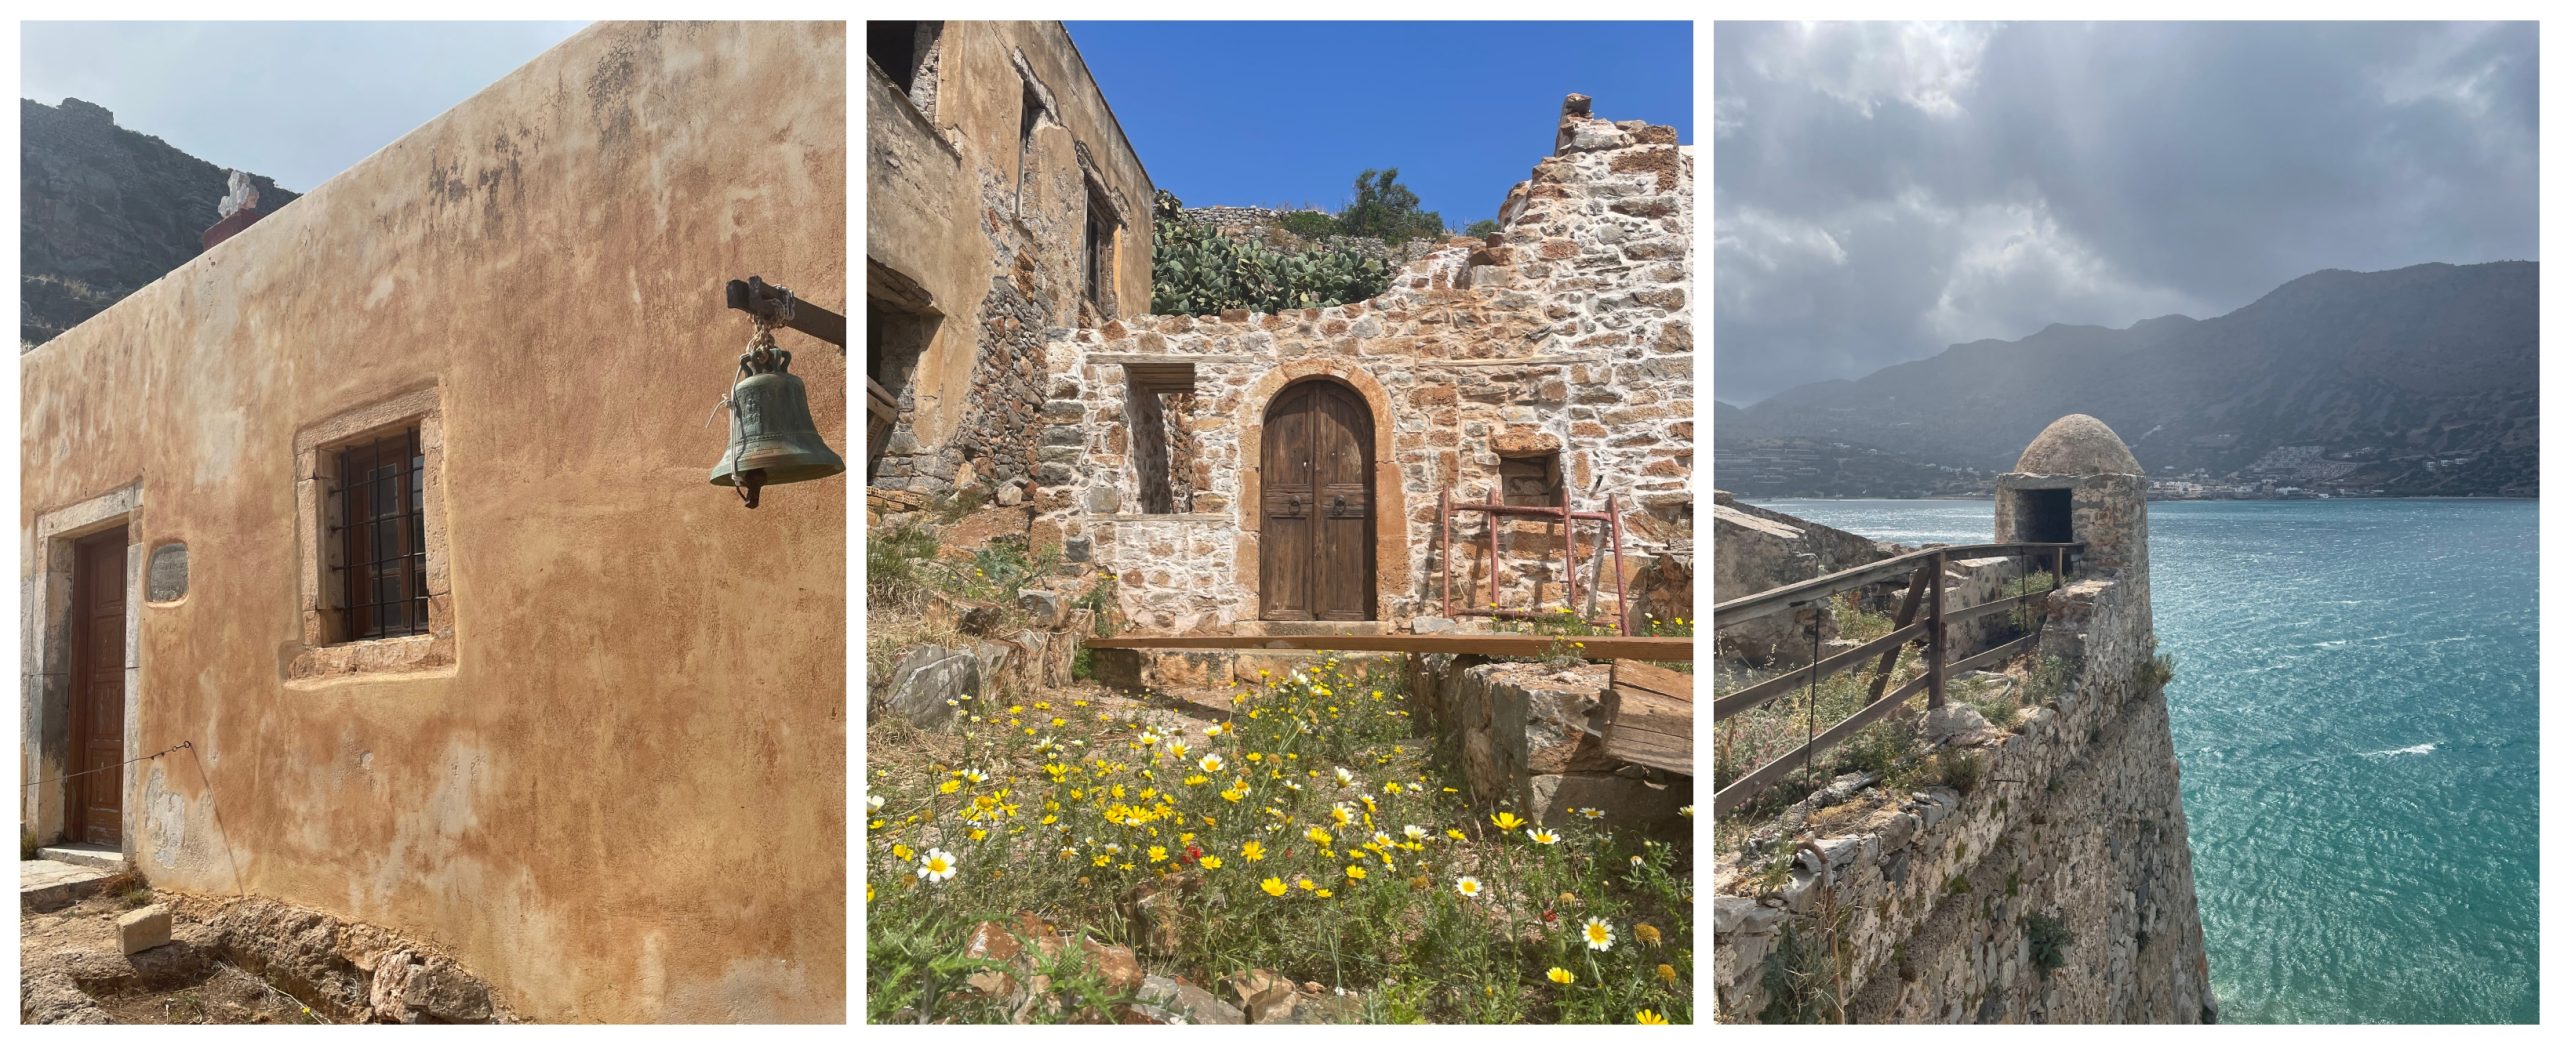 Κρήτη: Το μαγευτικό νησί με τα πολλά προσωπεία και τις συναρπαστικές ιστορίες